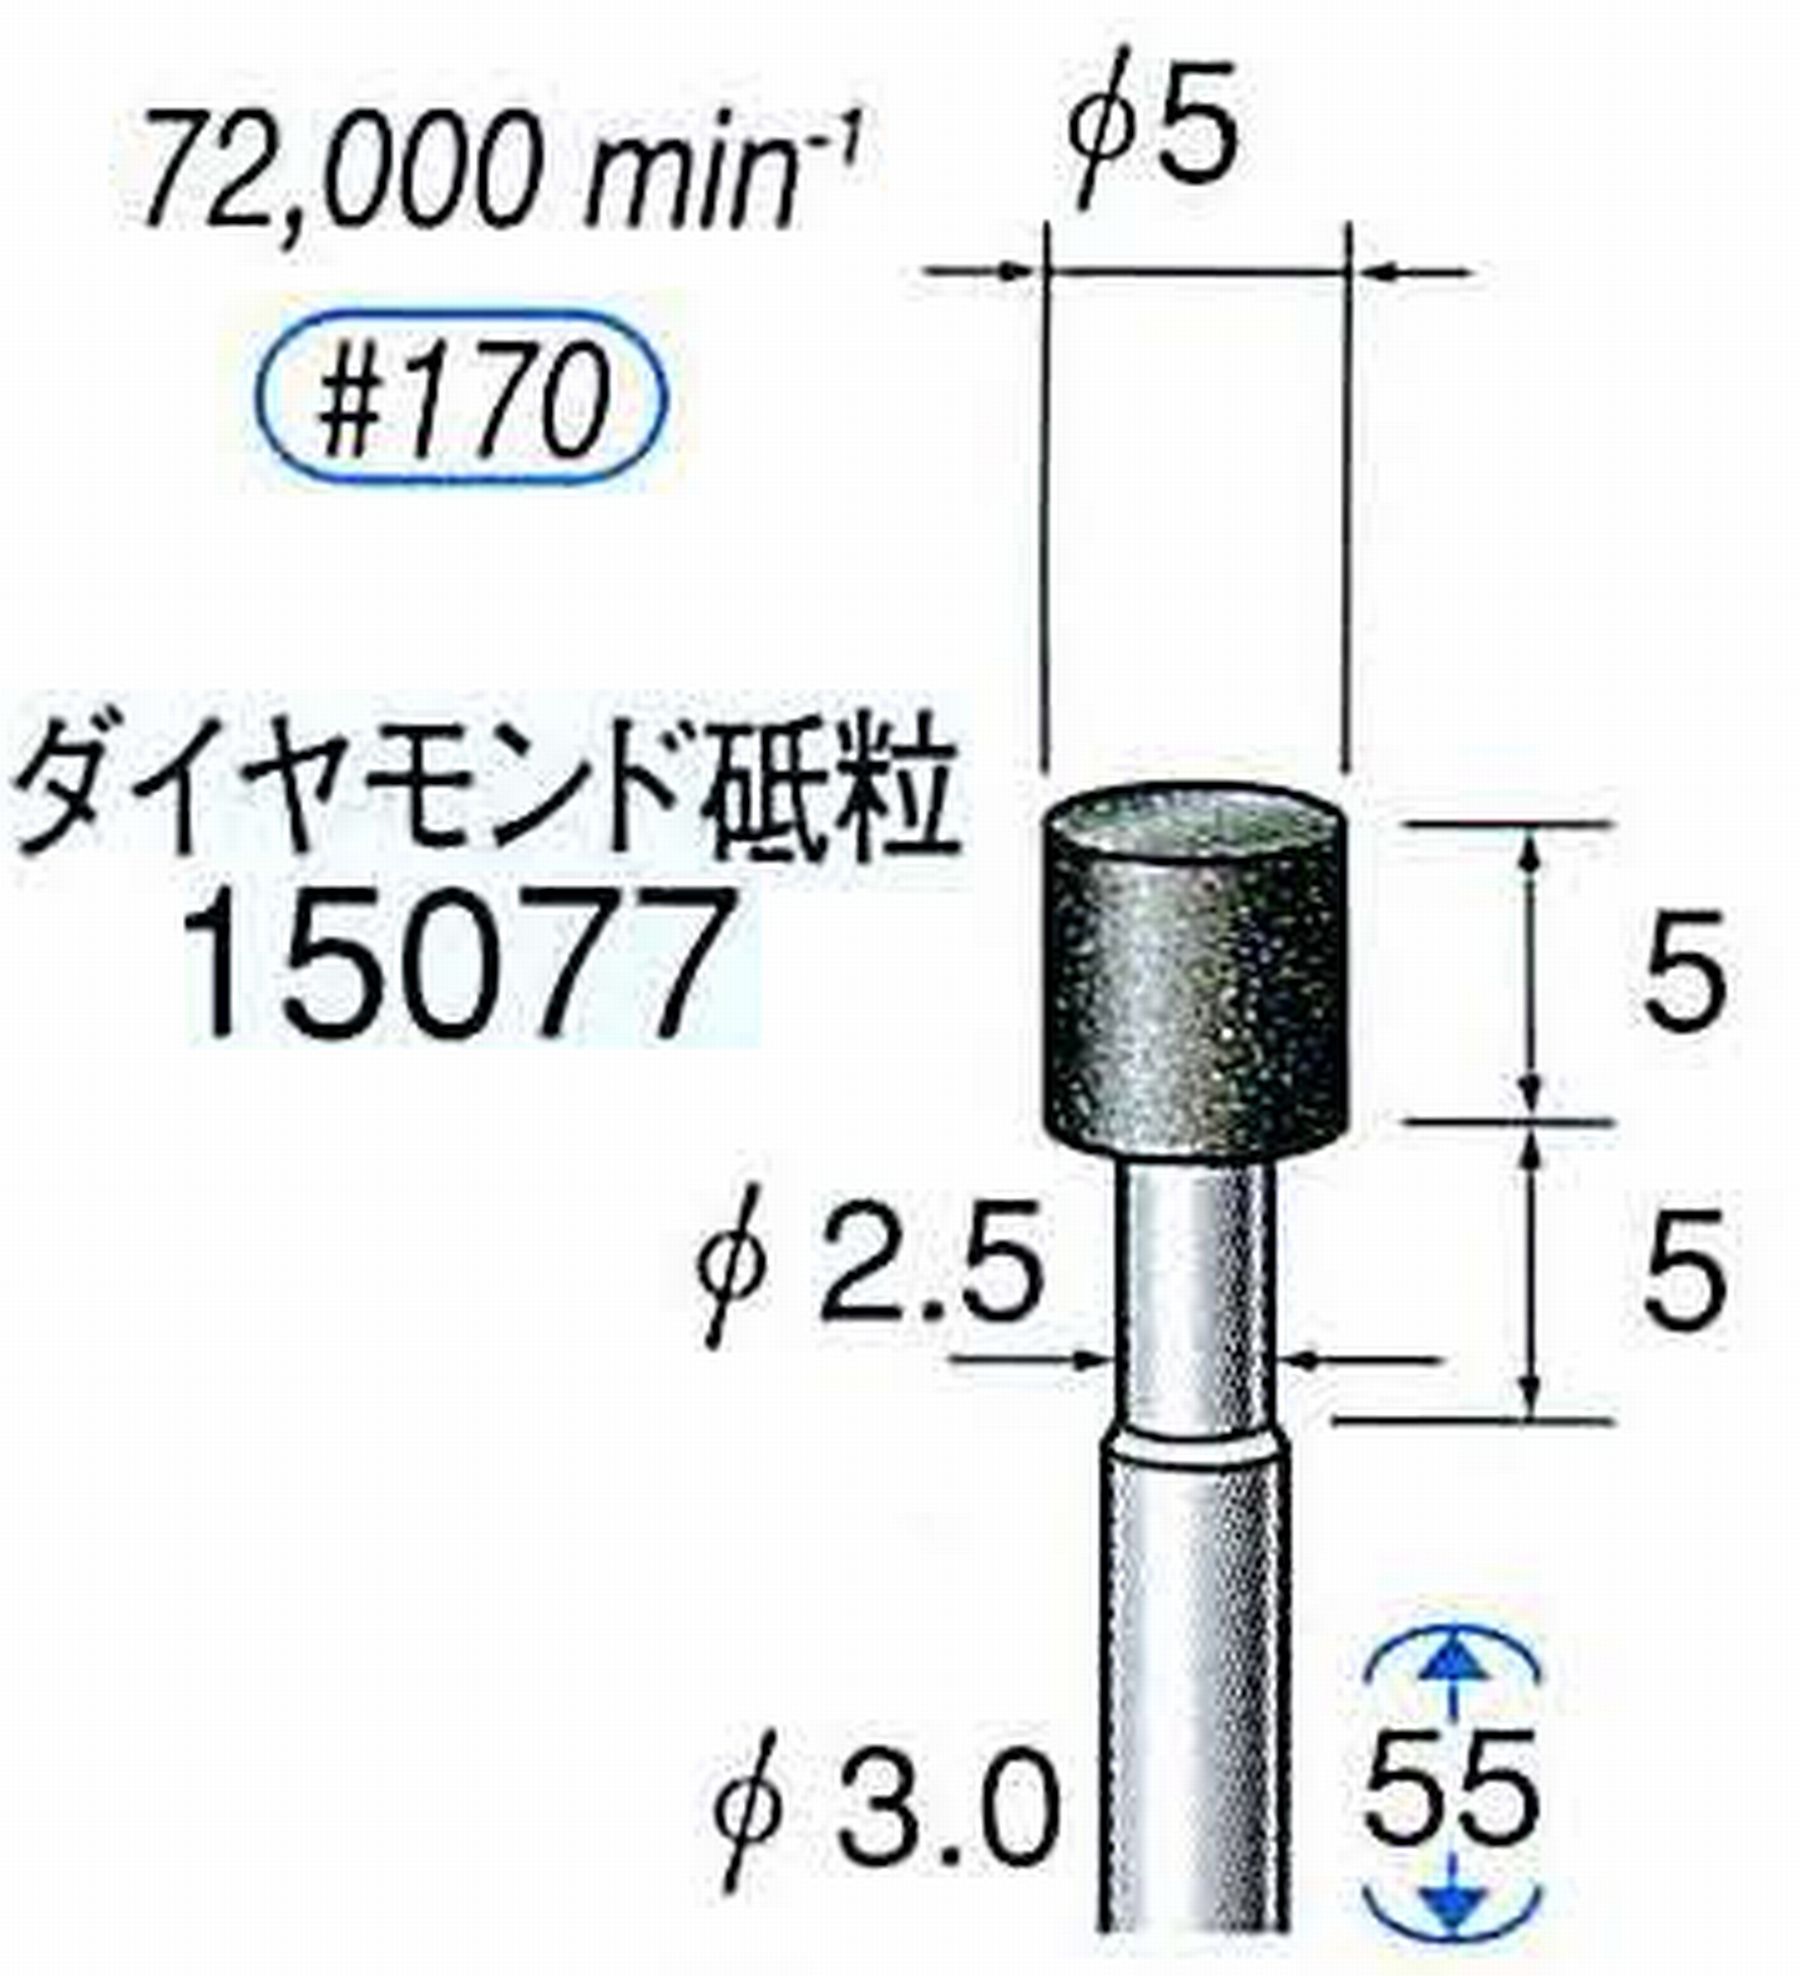 ナカニシ/NAKANISHI レジノイドダイヤモンド ダイヤモンド砥粒 軸径(シャンク)φ3.0mm 15077